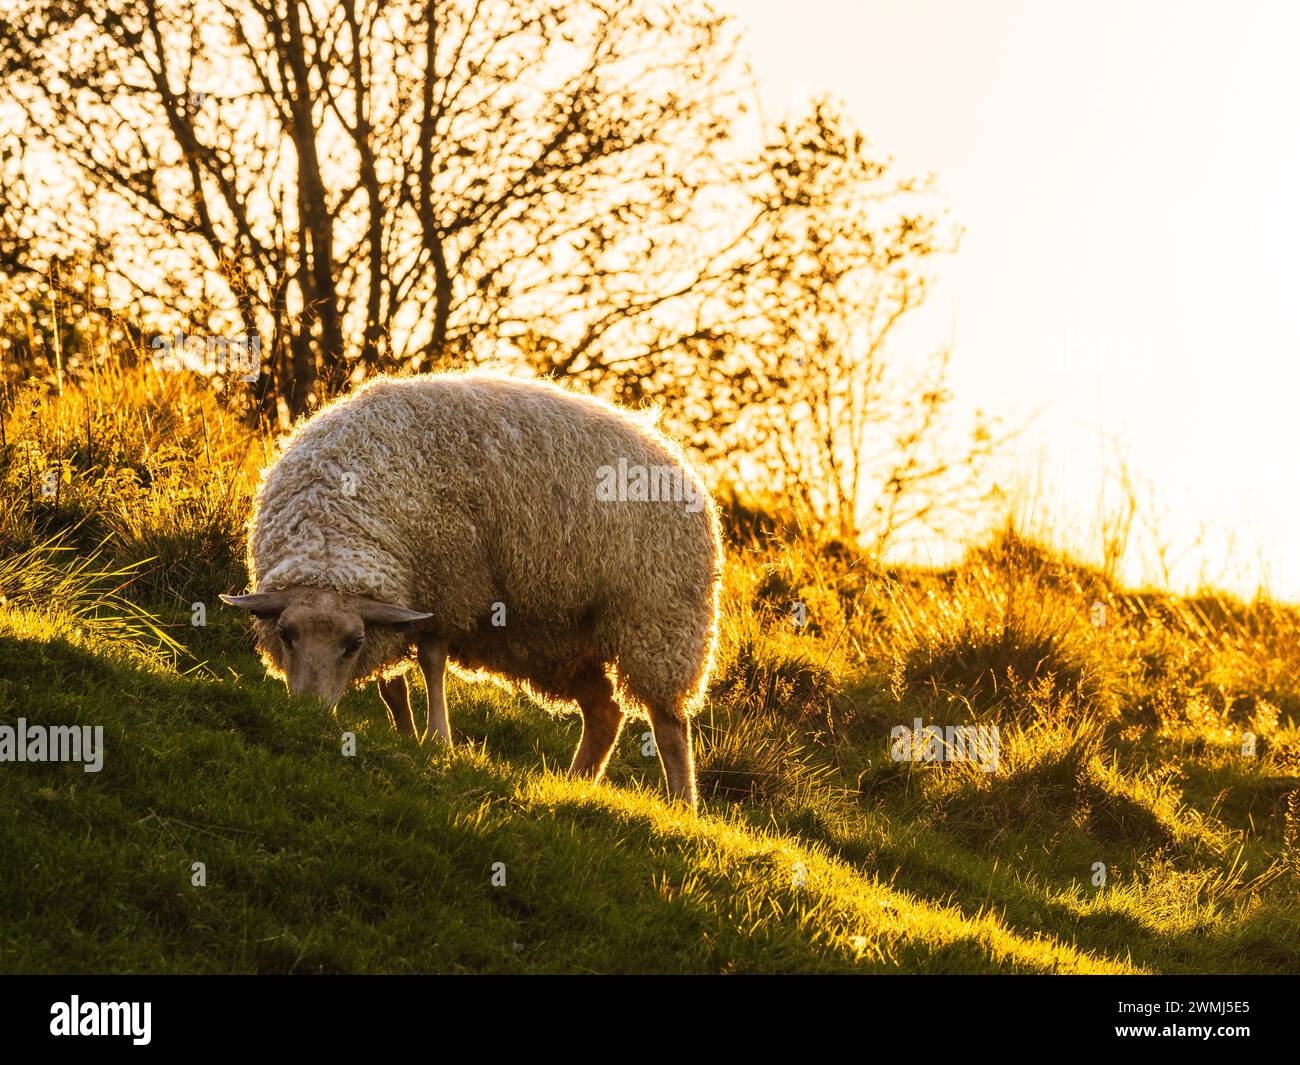 Baigné dans la lueur chaude du soleil couchant, un mouton paisible pèle sur l'herbe verte luxuriante de la campagne suédoise, avec des silhouettes d'arbres lini Banque D'Images